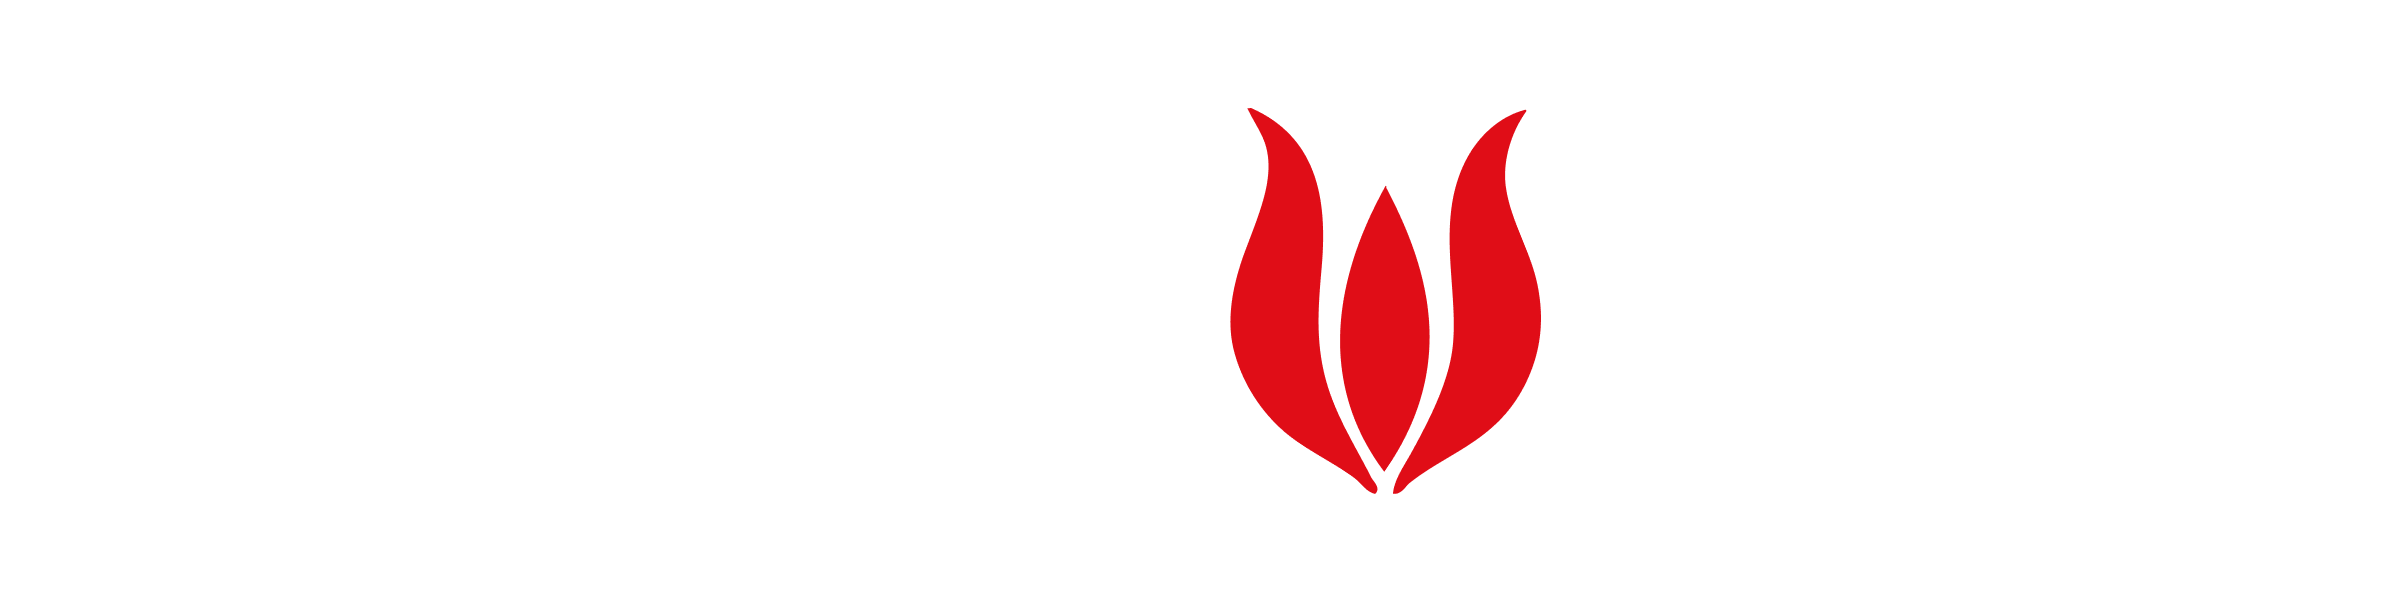 Magnolica White Logo